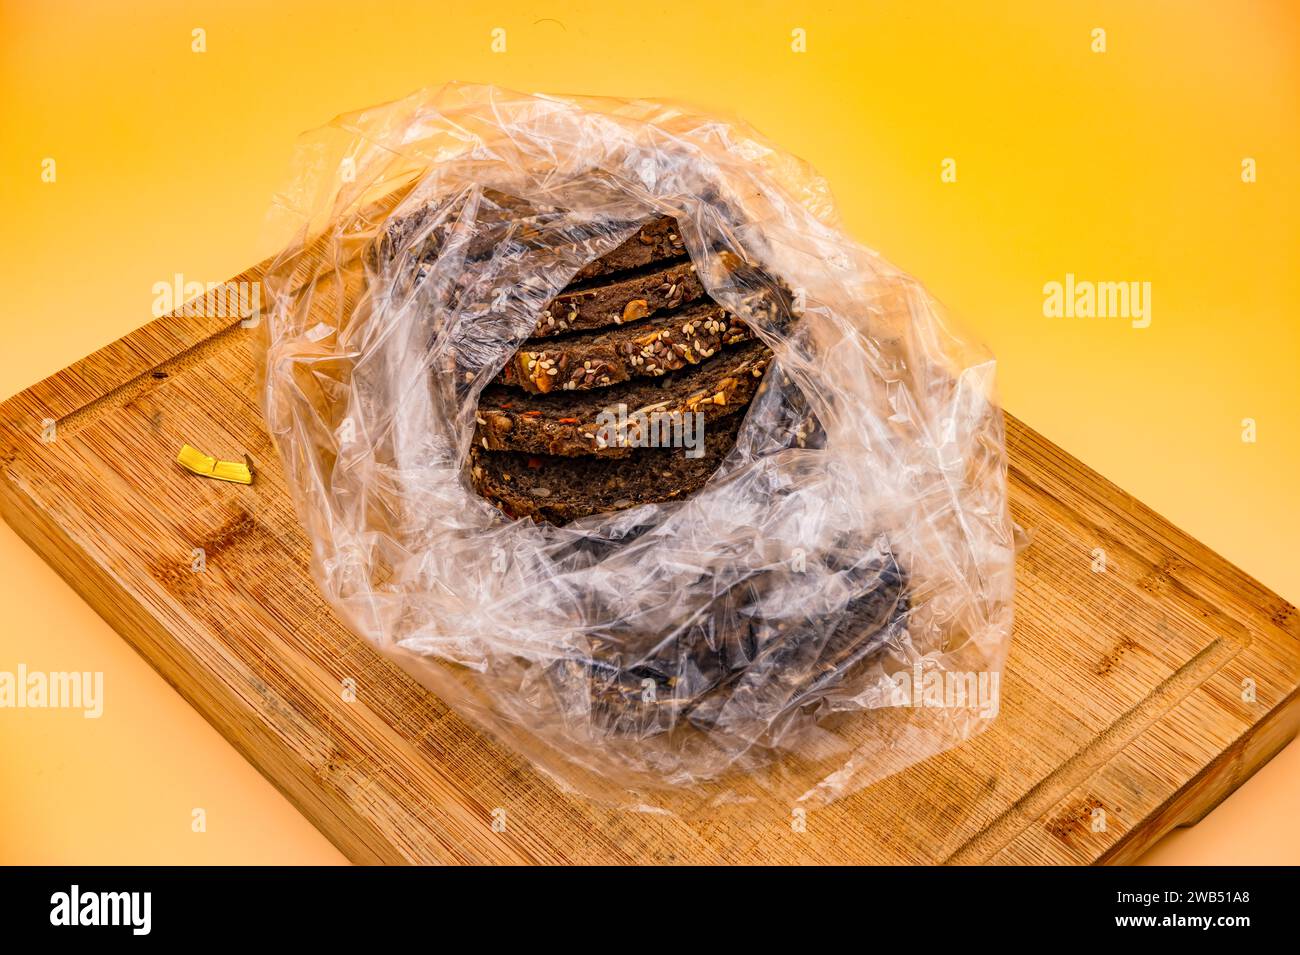 Pane integrale appena sfornato a fette in una busta di plastica fotografata su un tagliere su uno sfondo giallo nello studio Foto Stock